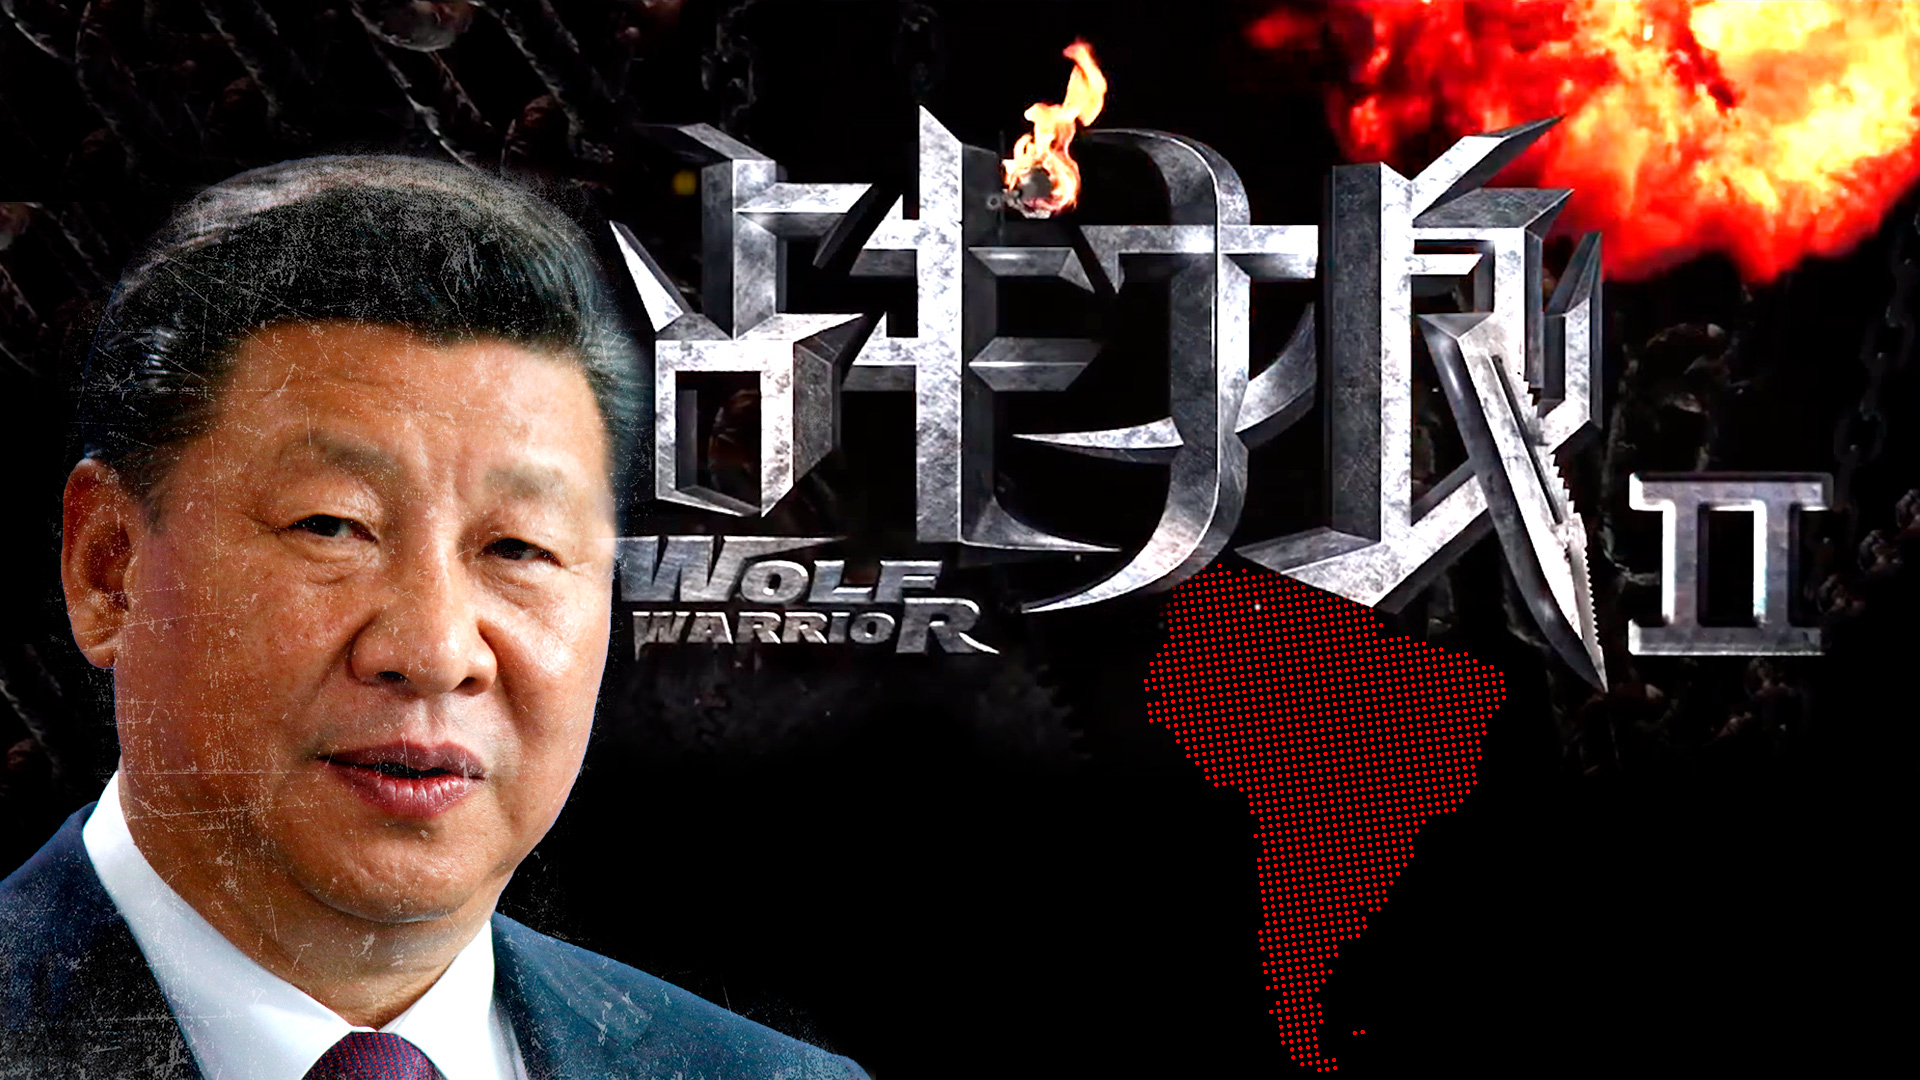 Xi Jinping, presidente de China. Detrás, el póster promocional de la película "Wolf Warrior 2", un film del estilo "Rambo" que promociona la fortaleza del país (Infobae)